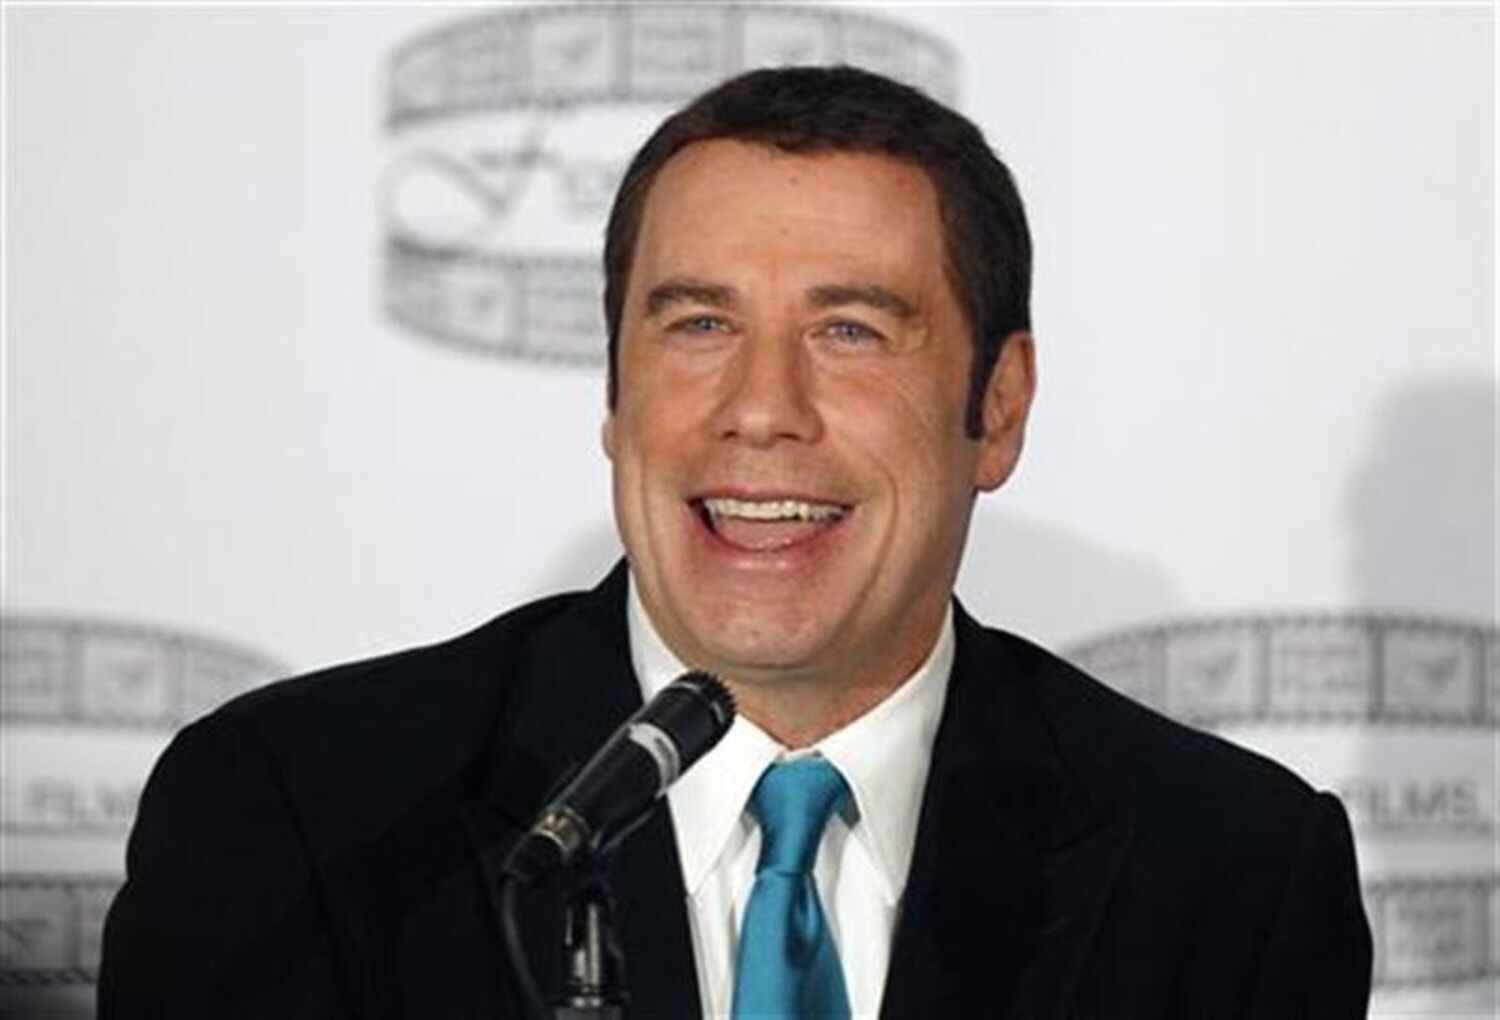 Famous people horrible actions - John Travolta - S Lms